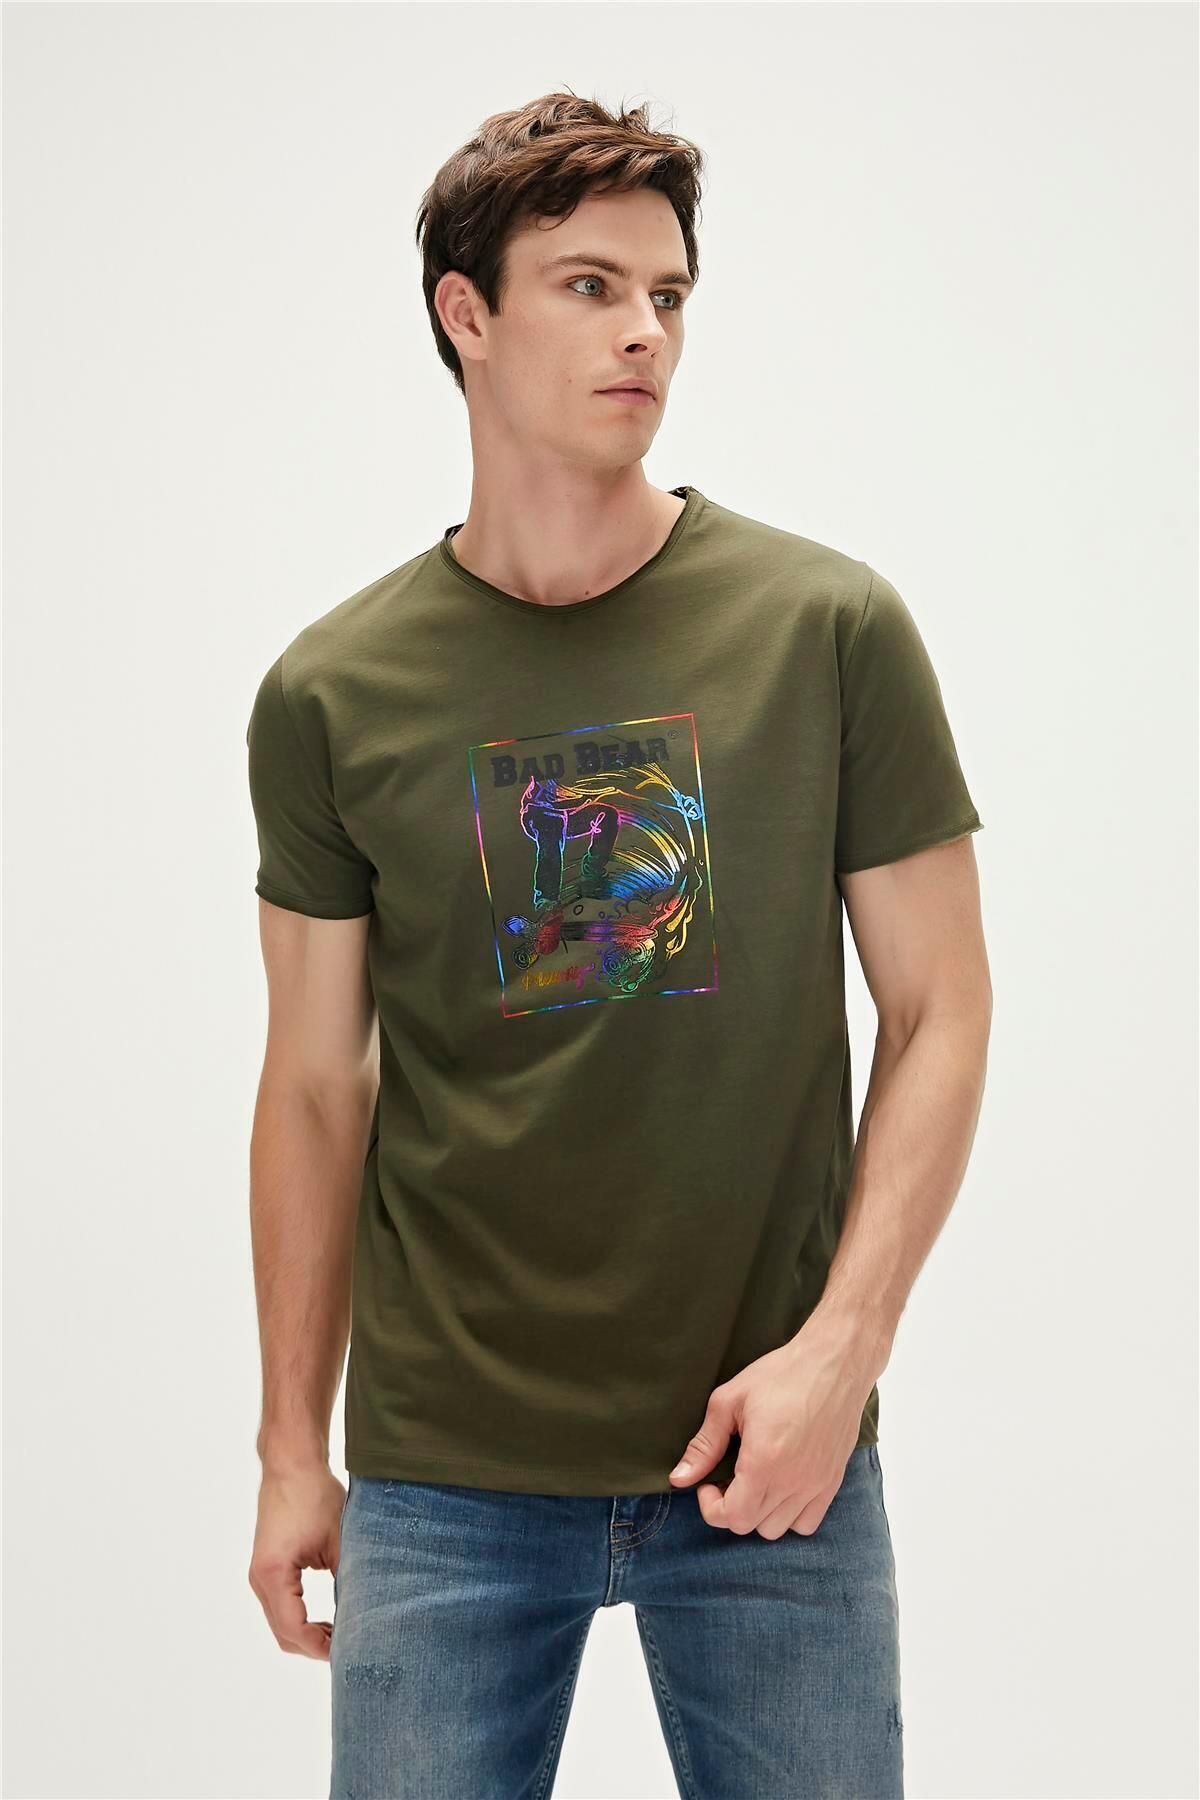 Bad Bear One Way T-shirt Haki Yeşil Baskılı Erkek Tişört